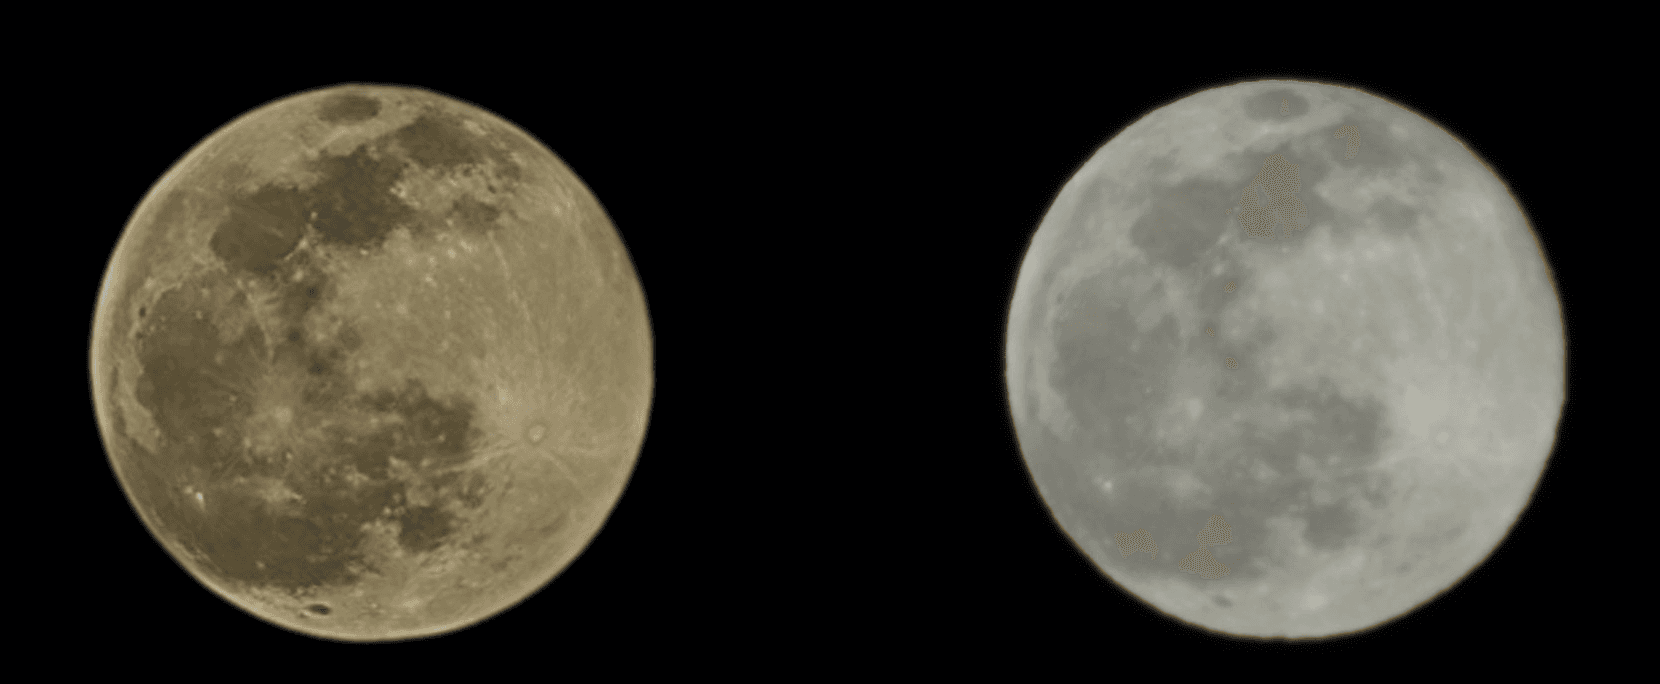 مقارنة صورة القمر بين كاميرا سوني - على اليمين - وهاتف سامسونج - على اليسار